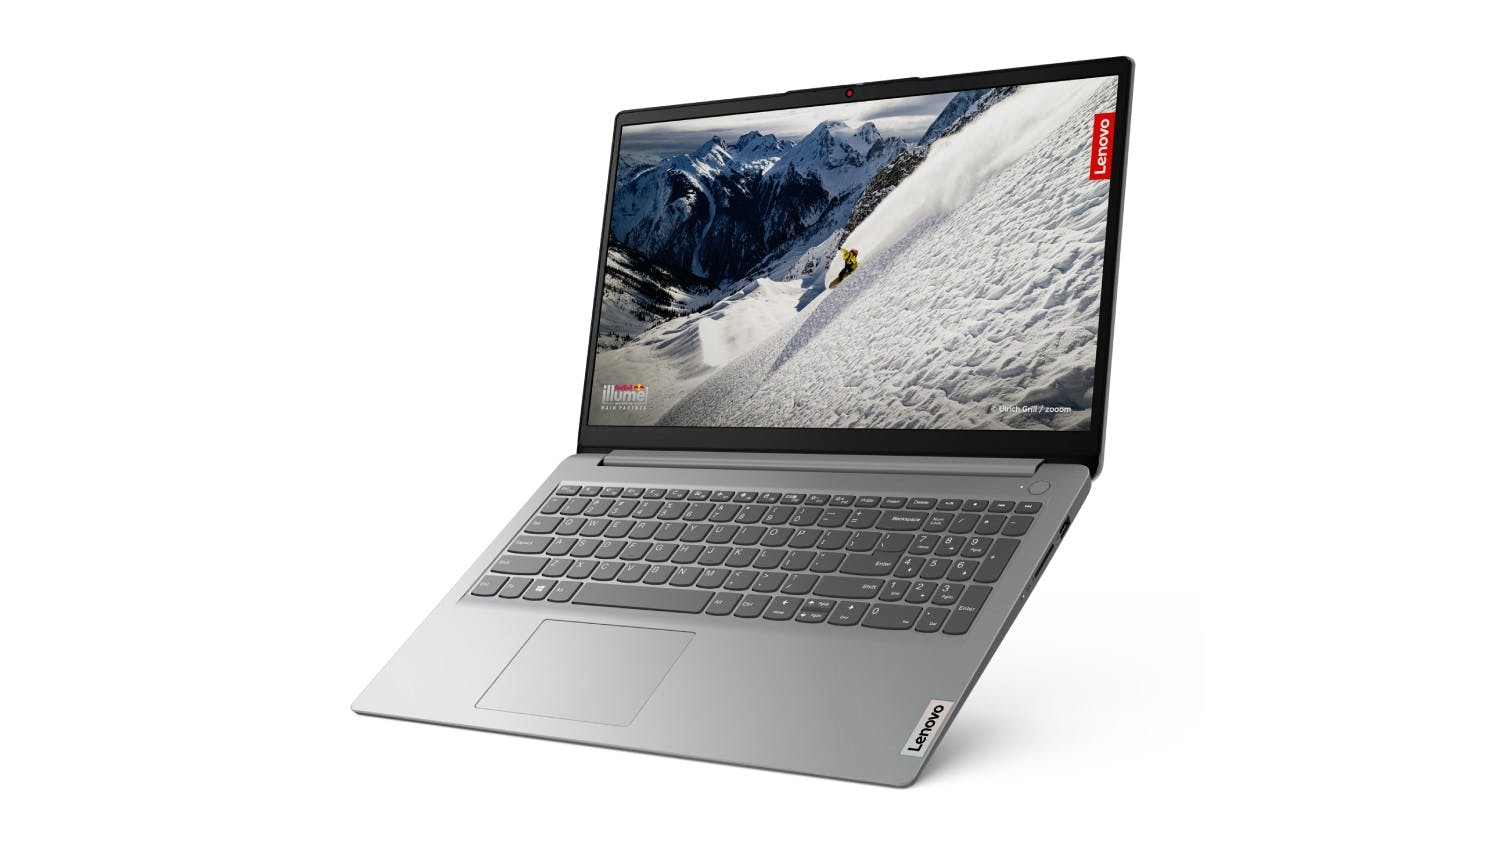 Lenovo Ideapad Slim 1 (7th Gen) 15.6" Laptop - AMD Ryzen5 8GB-RAM 512GB-SSD - Cloud Grey (82VG002SAU)